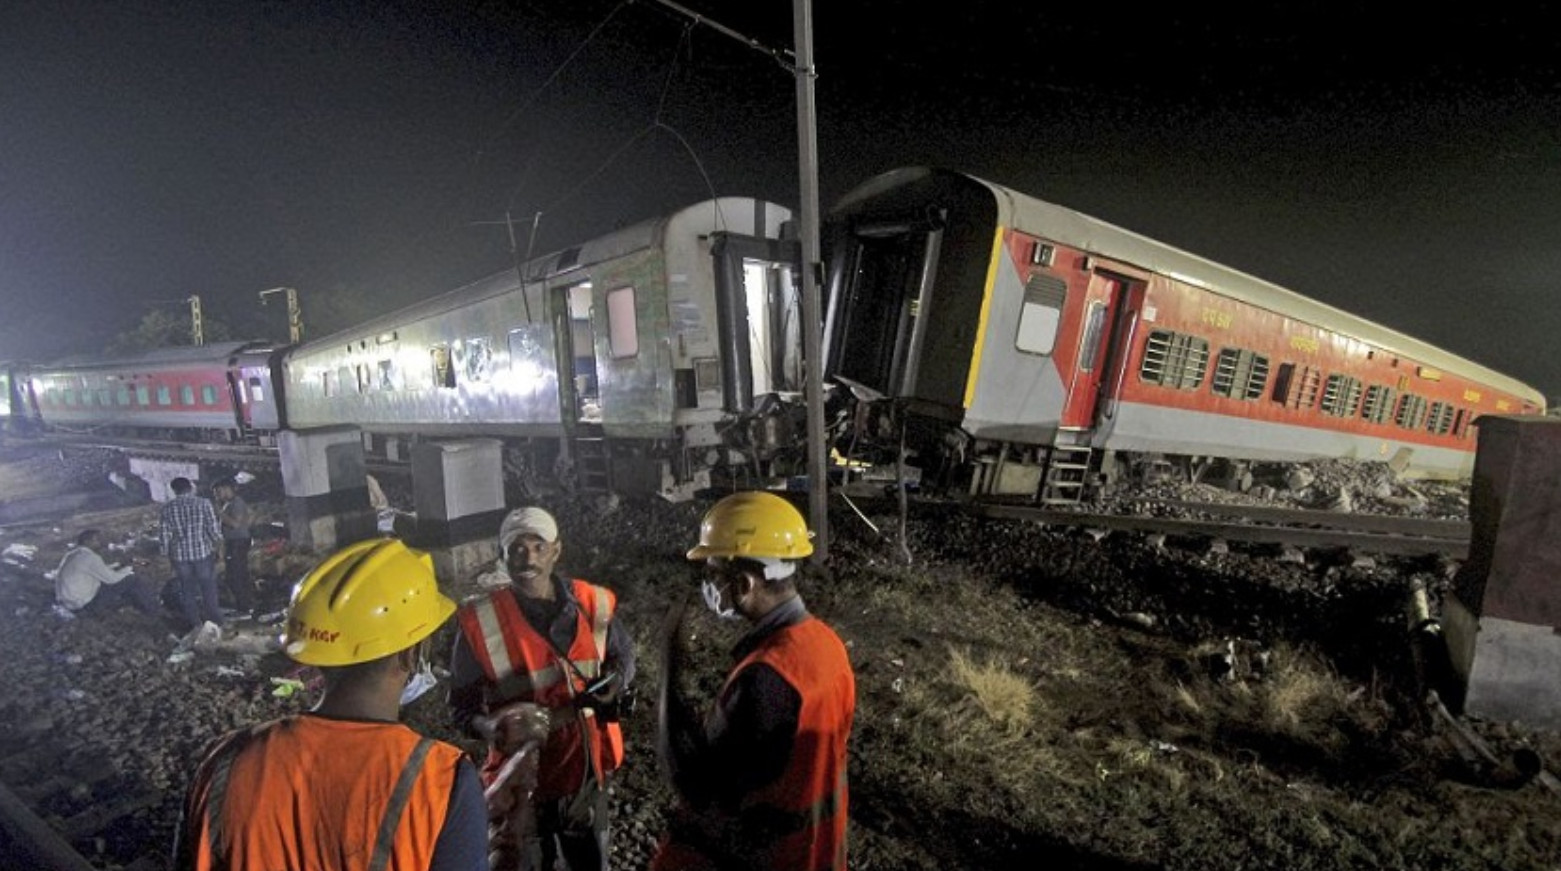 Εντοπίστηκαν τα αίτια και οι υπεύθυνοι της σιδηροδρομικής τραγωδίας στην Ινδία σύμφωνα με τον αρμόδιο υπουργό